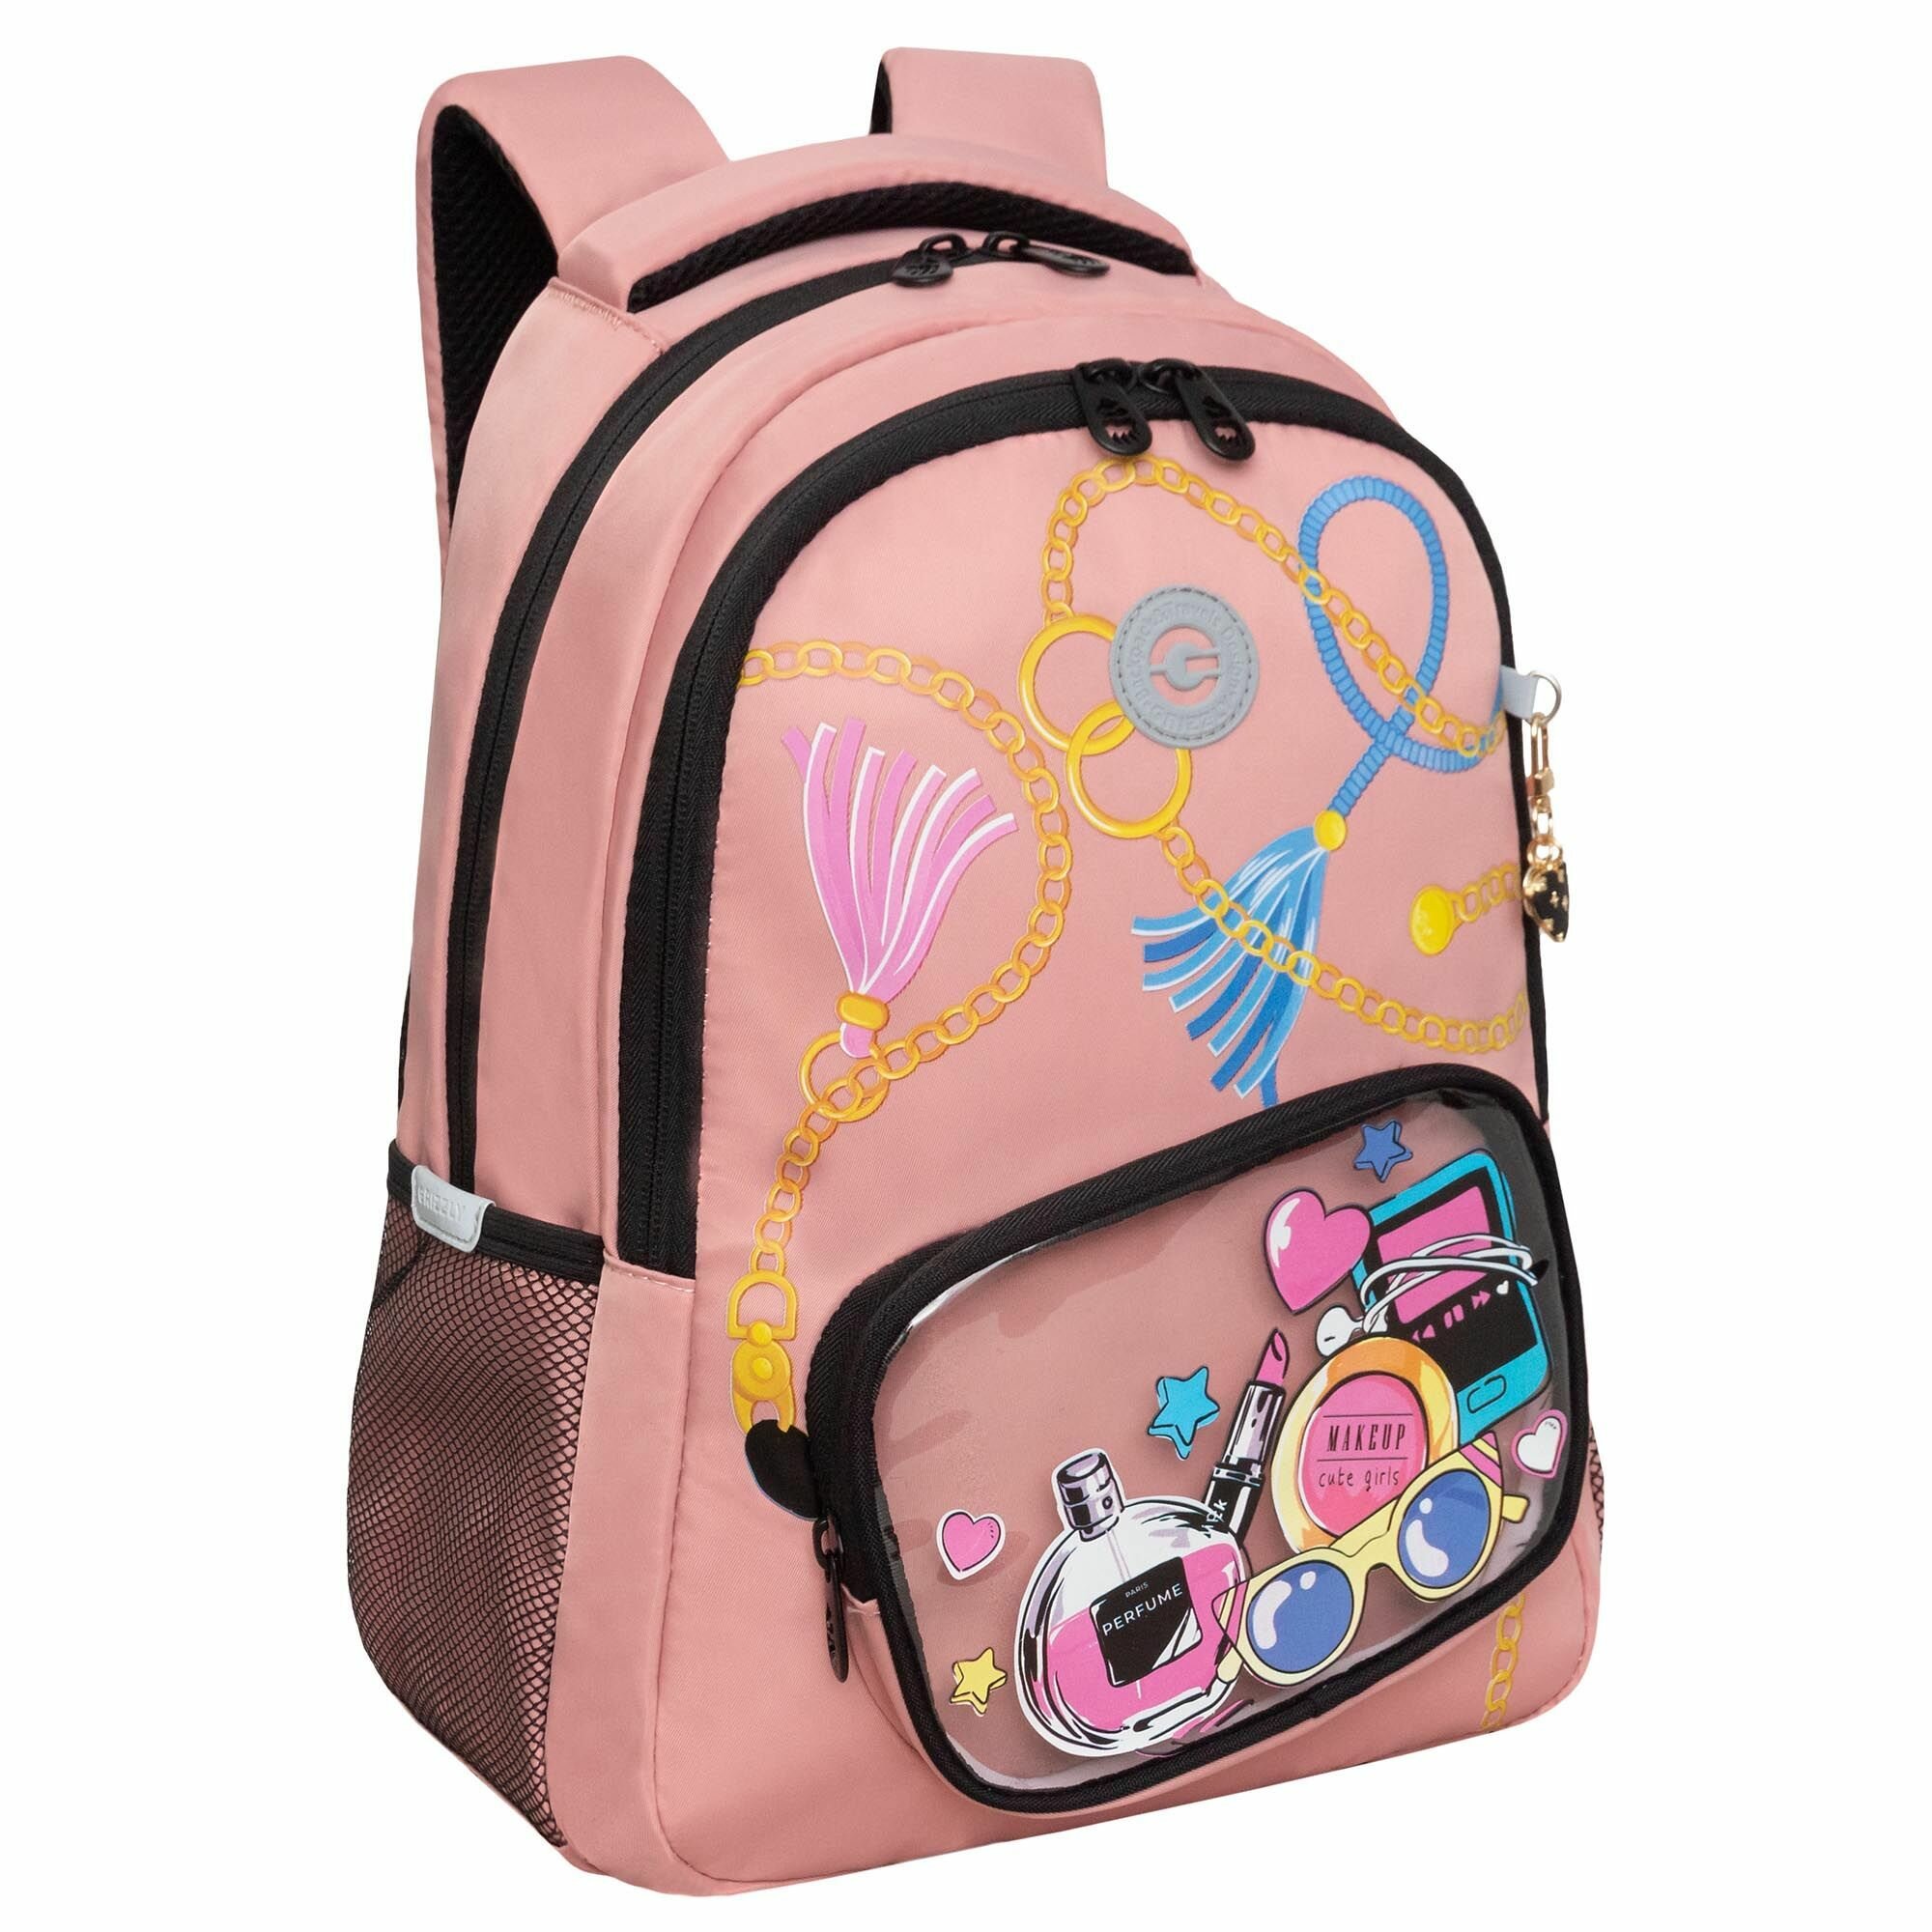 Рюкзак школьный для девочки подростка, с ортопедической спинкой, для средней школы, GRIZZLY, (розовый)